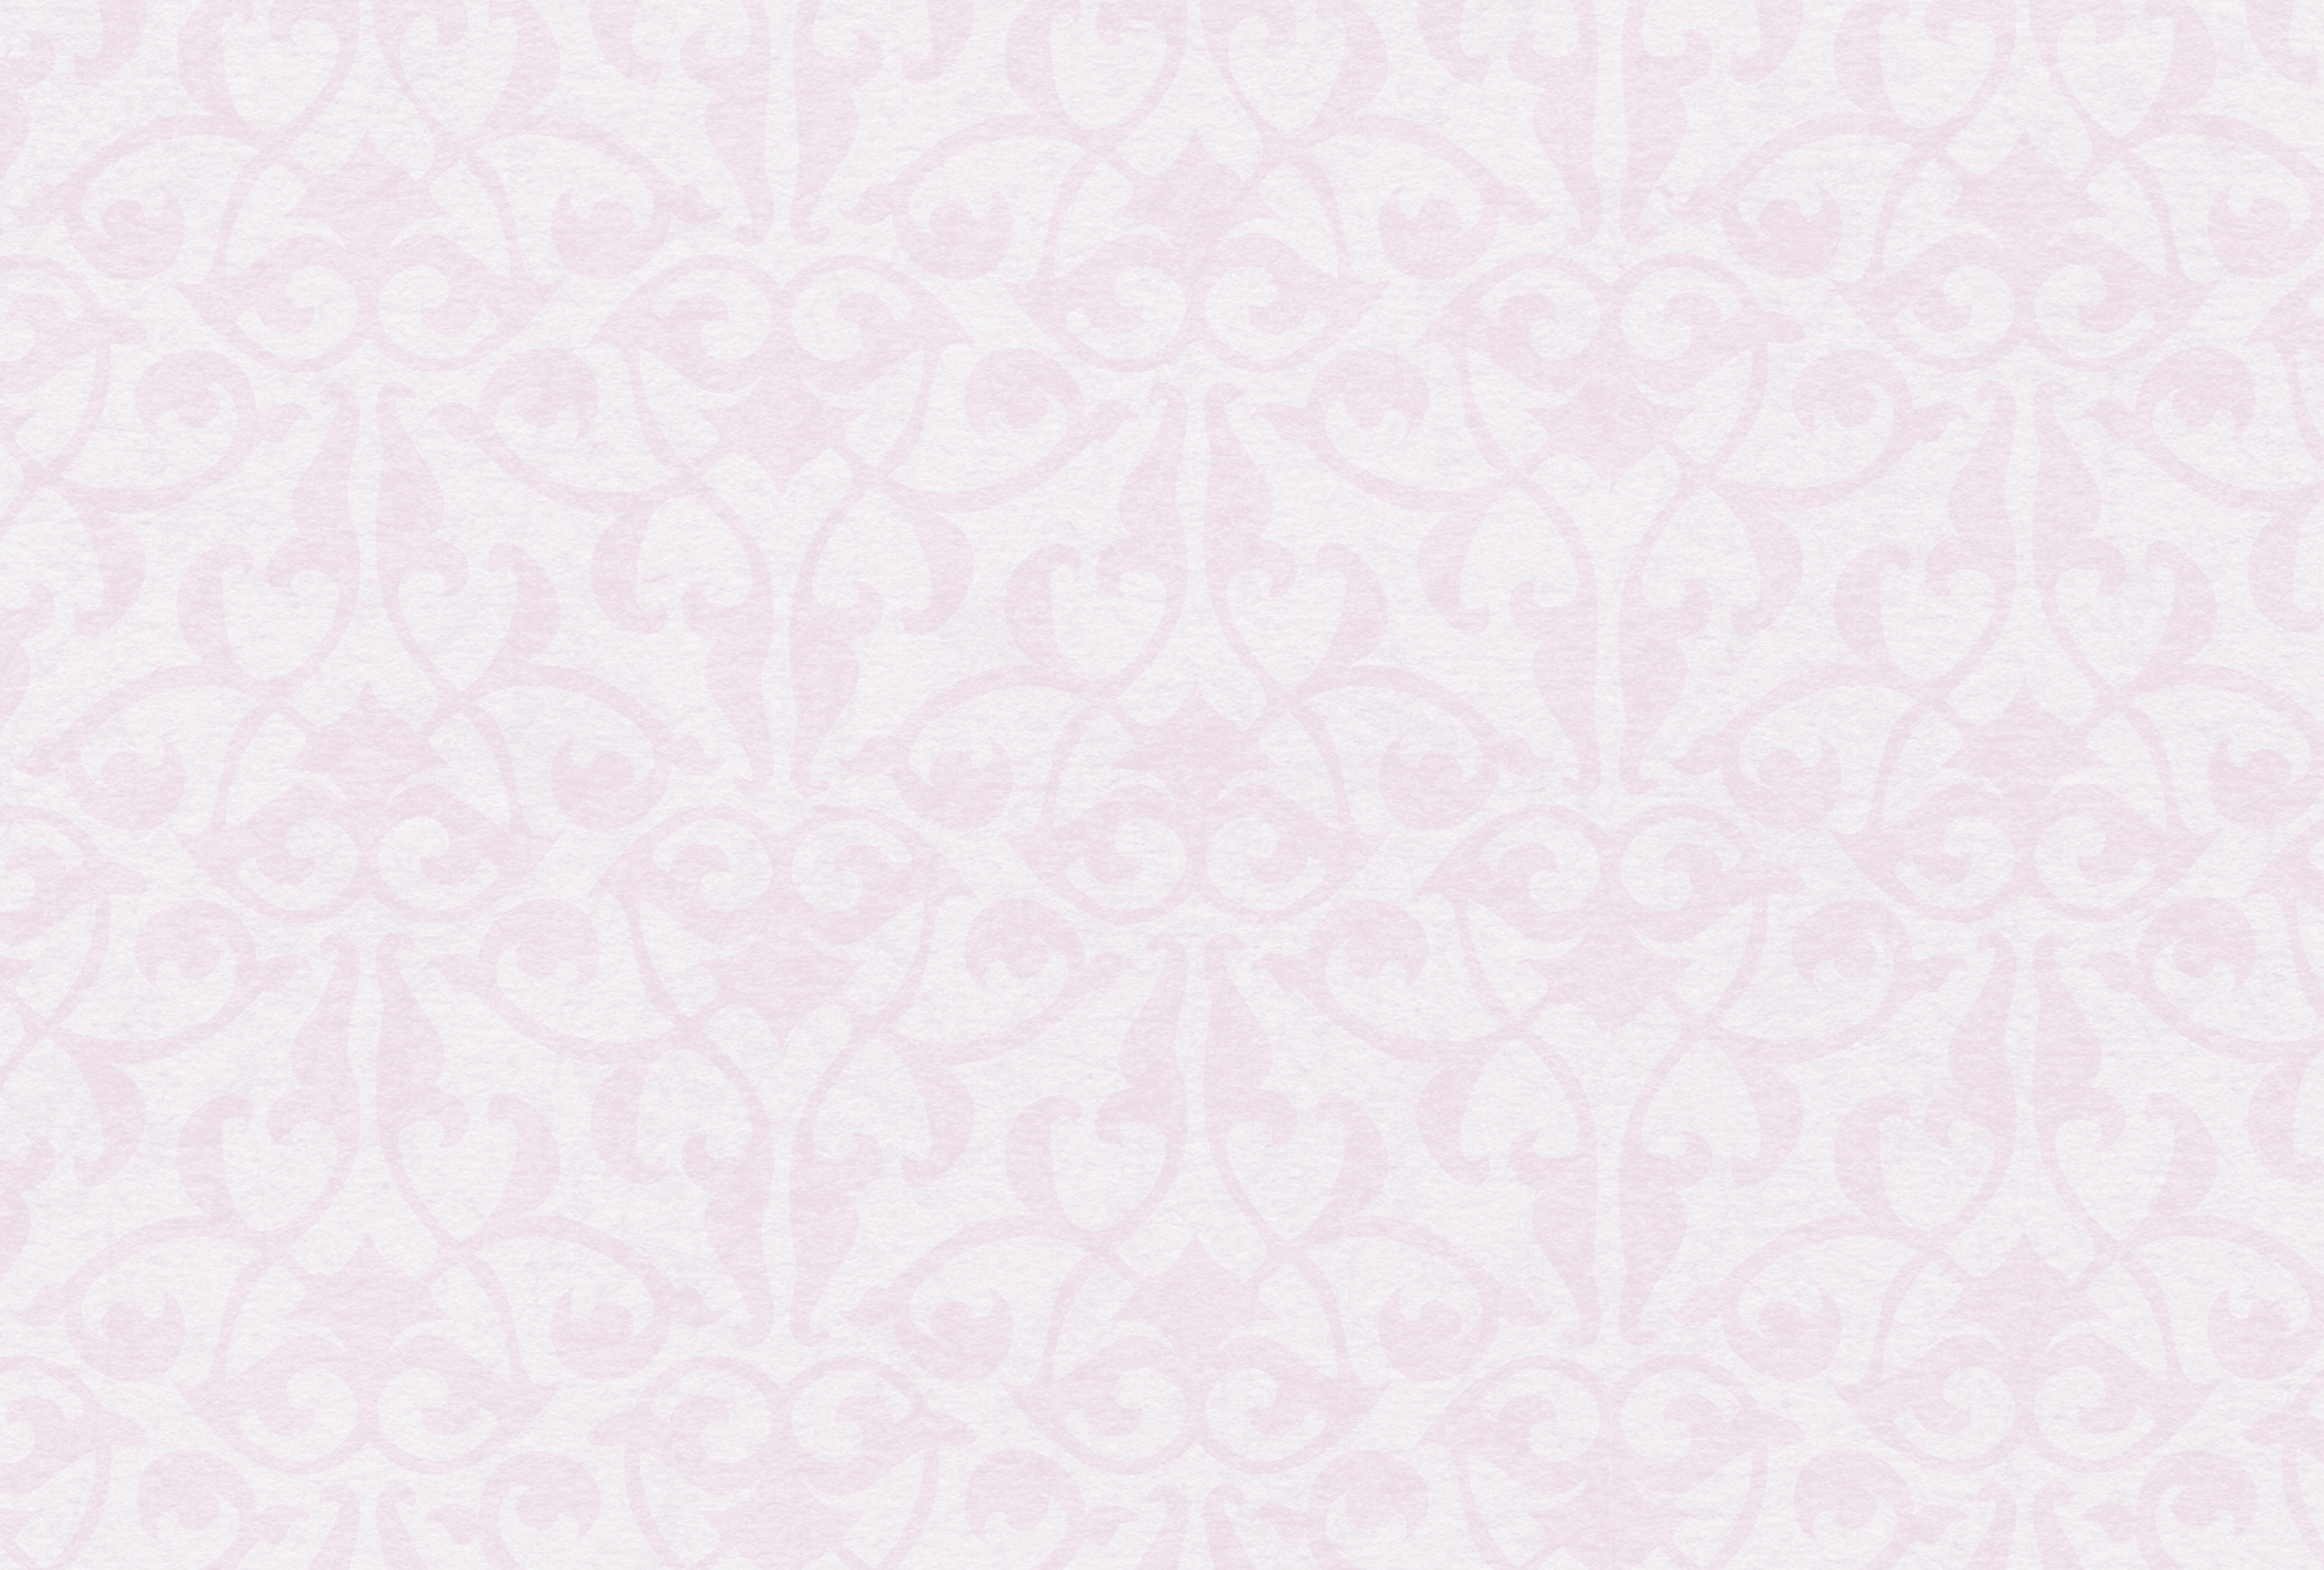 soft pink vintage background